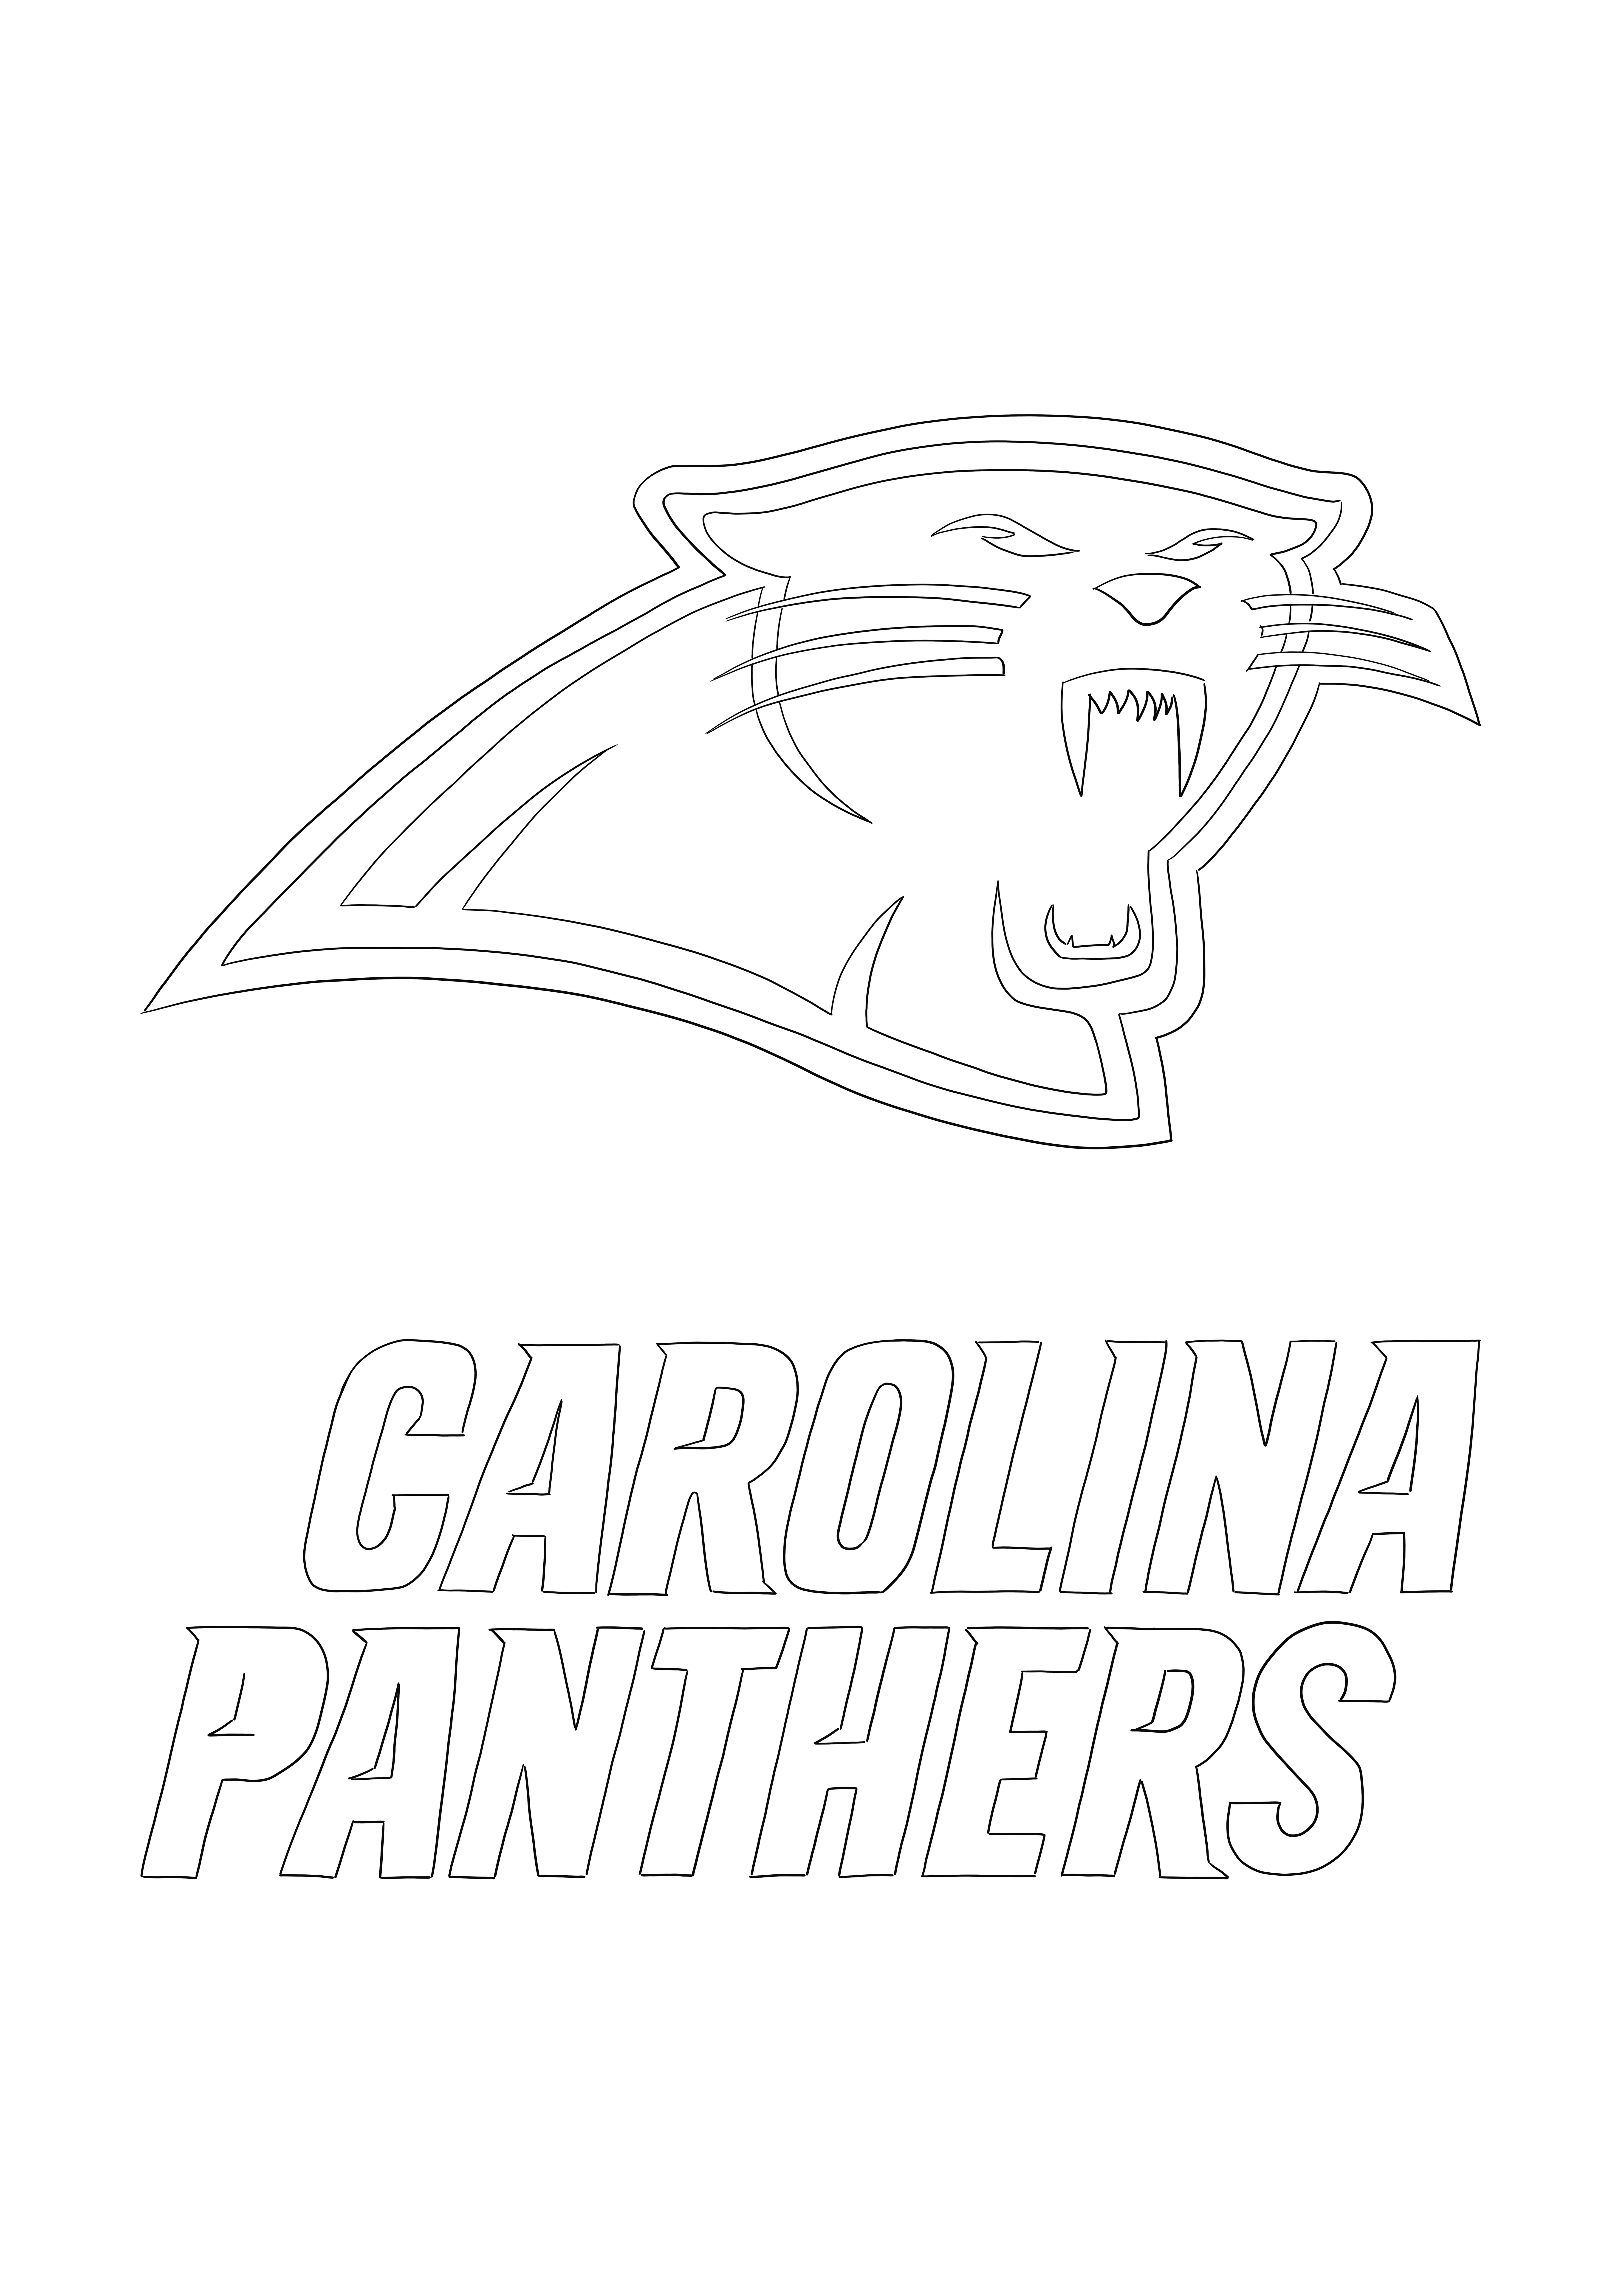 Carolina Panthers Logo imprimível gratuitamente para colorir para todos os que amam a NFL